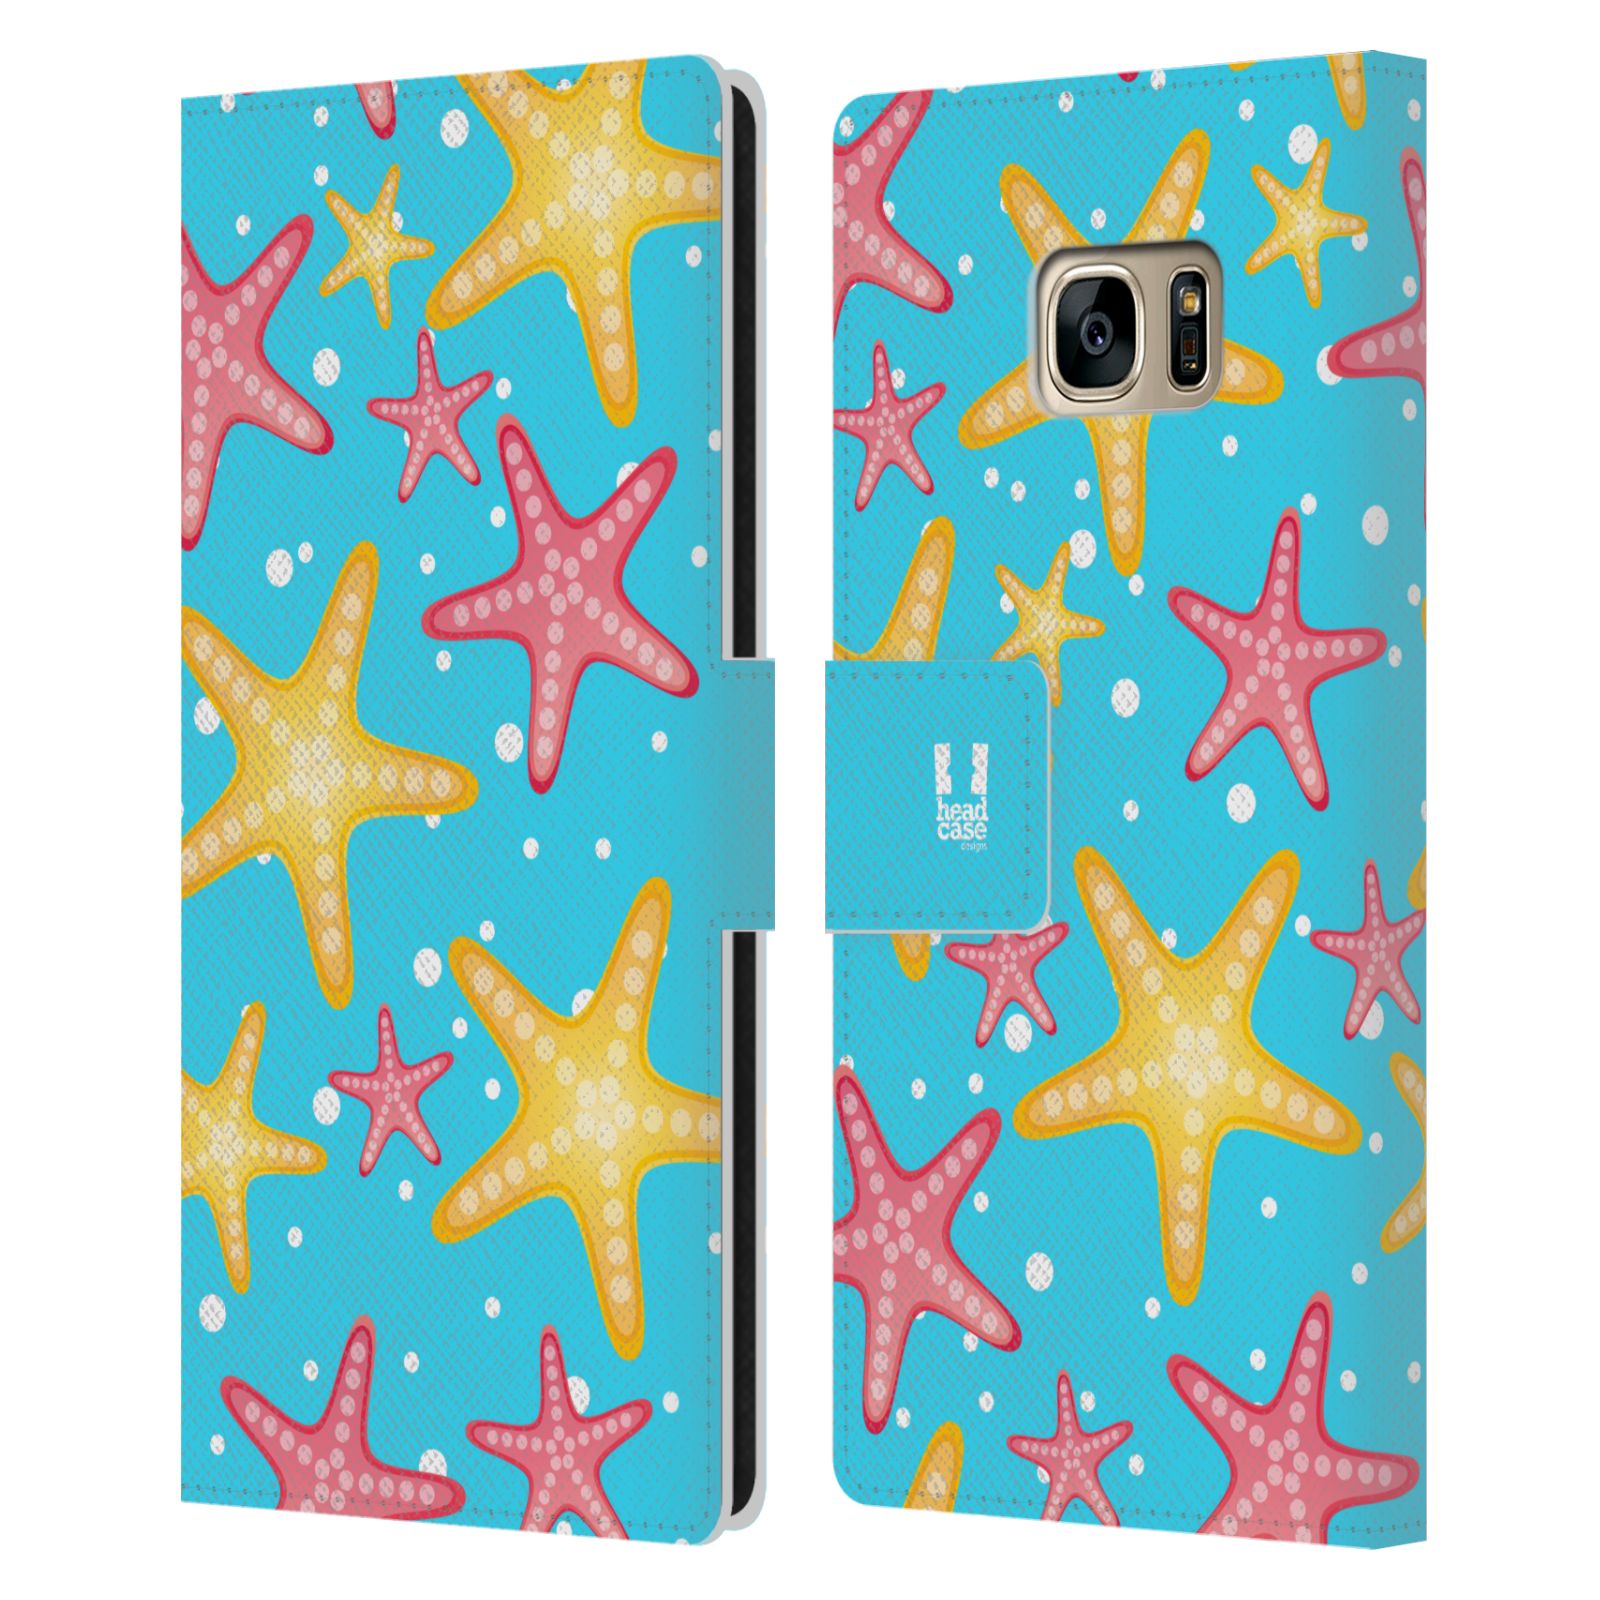 Pouzdro pro mobil Samsung Galaxy S7 EDGE - Mořský vzor - barevné hvězdy